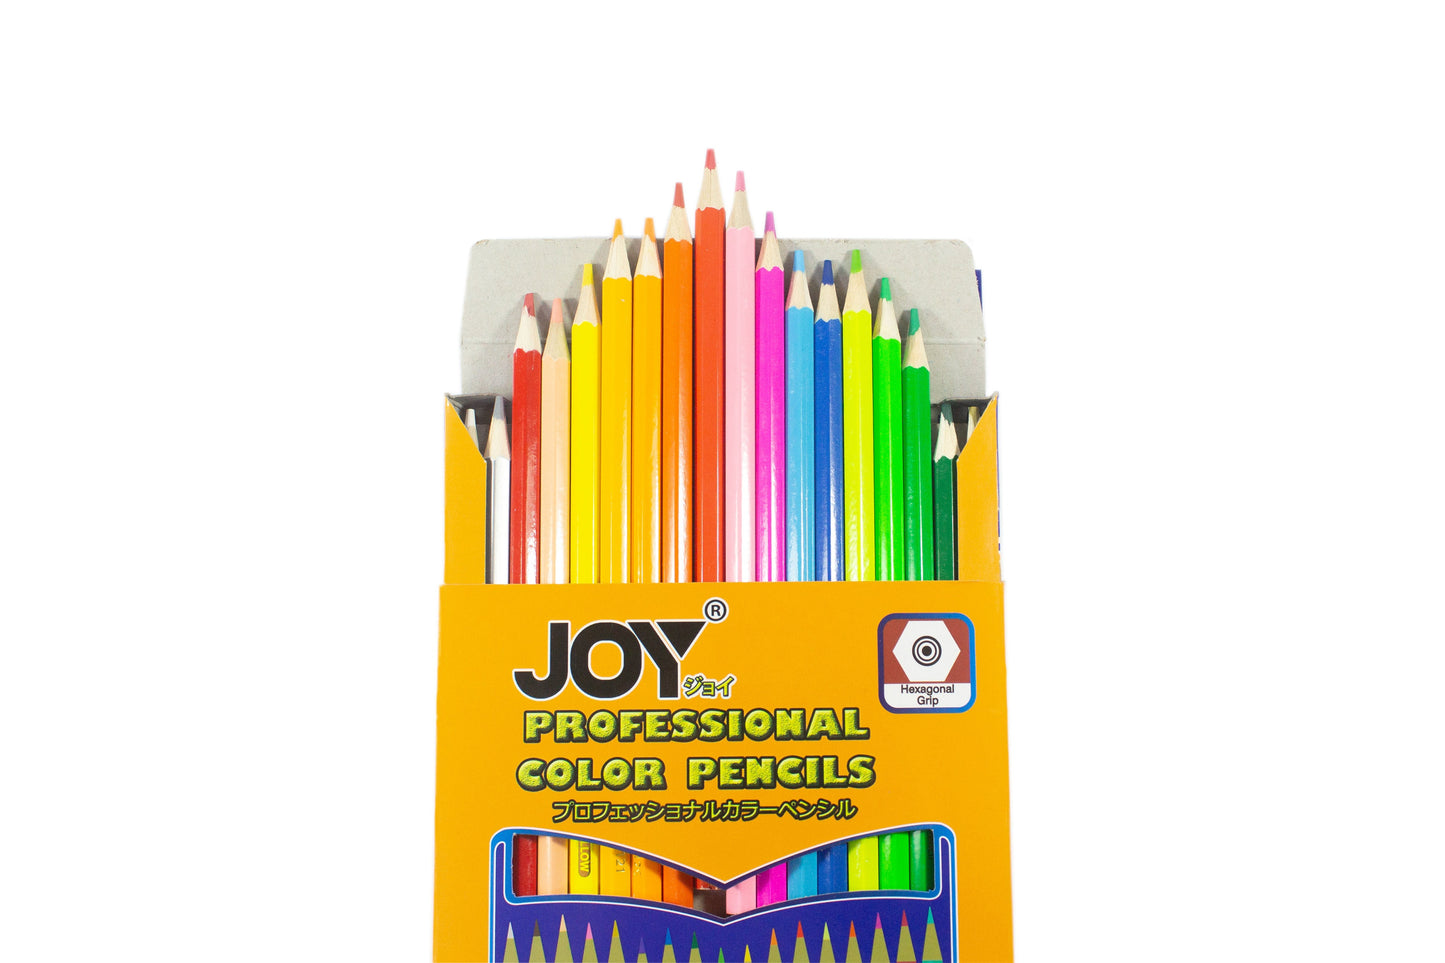 Joy Professional Color Pencil Long 36C 12Sets